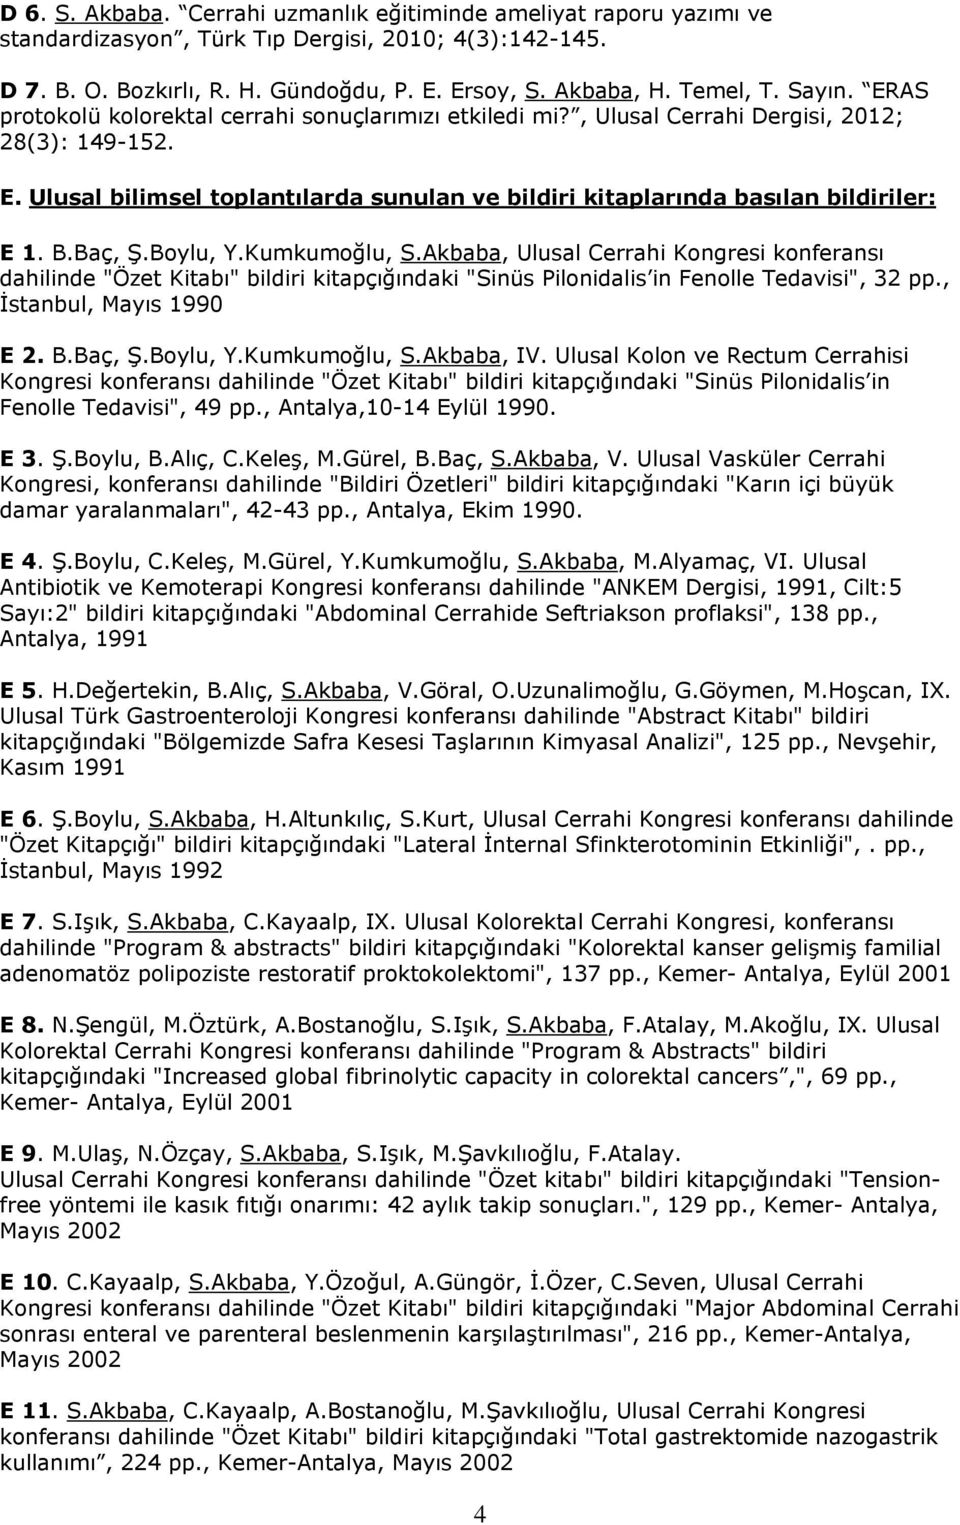 B.Baç, Ş.Boylu, Y.Kumkumoğlu, S.Akbaba, Ulusal Cerrahi Kongresi konferansı dahilinde "Özet Kitabı" bildiri kitapçığındaki "Sinüs Pilonidalis in Fenolle Tedavisi", 32 pp., İstanbul, Mayıs 1990 E 2. B.